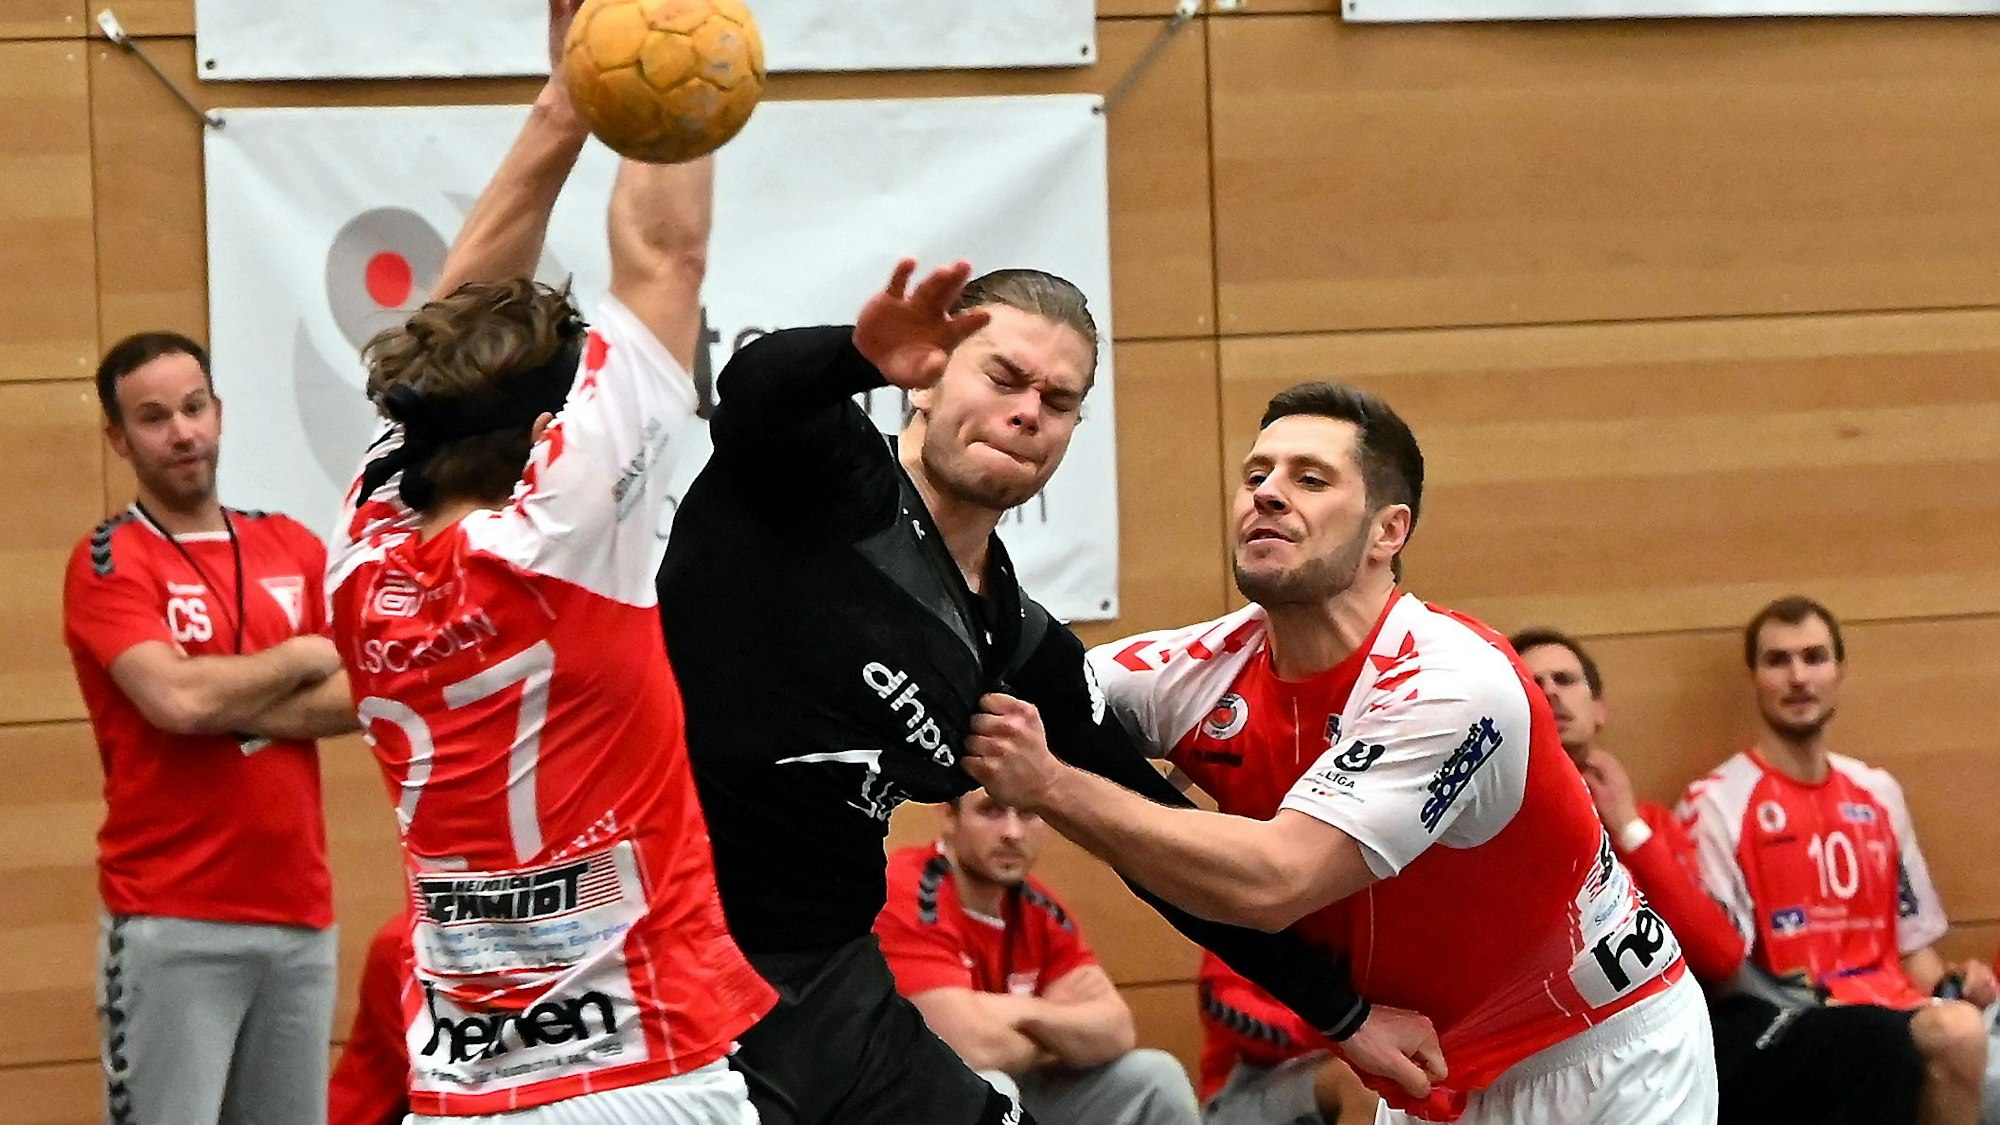 Handball
Longericher SC Köln - Tus Opladen

linmks: Max Zimmermann (Longer)
mitte: Maurice Meurer (OPL)
rechts: Maximilian Zerwas (Longer)

Foto: Uli Herhaus